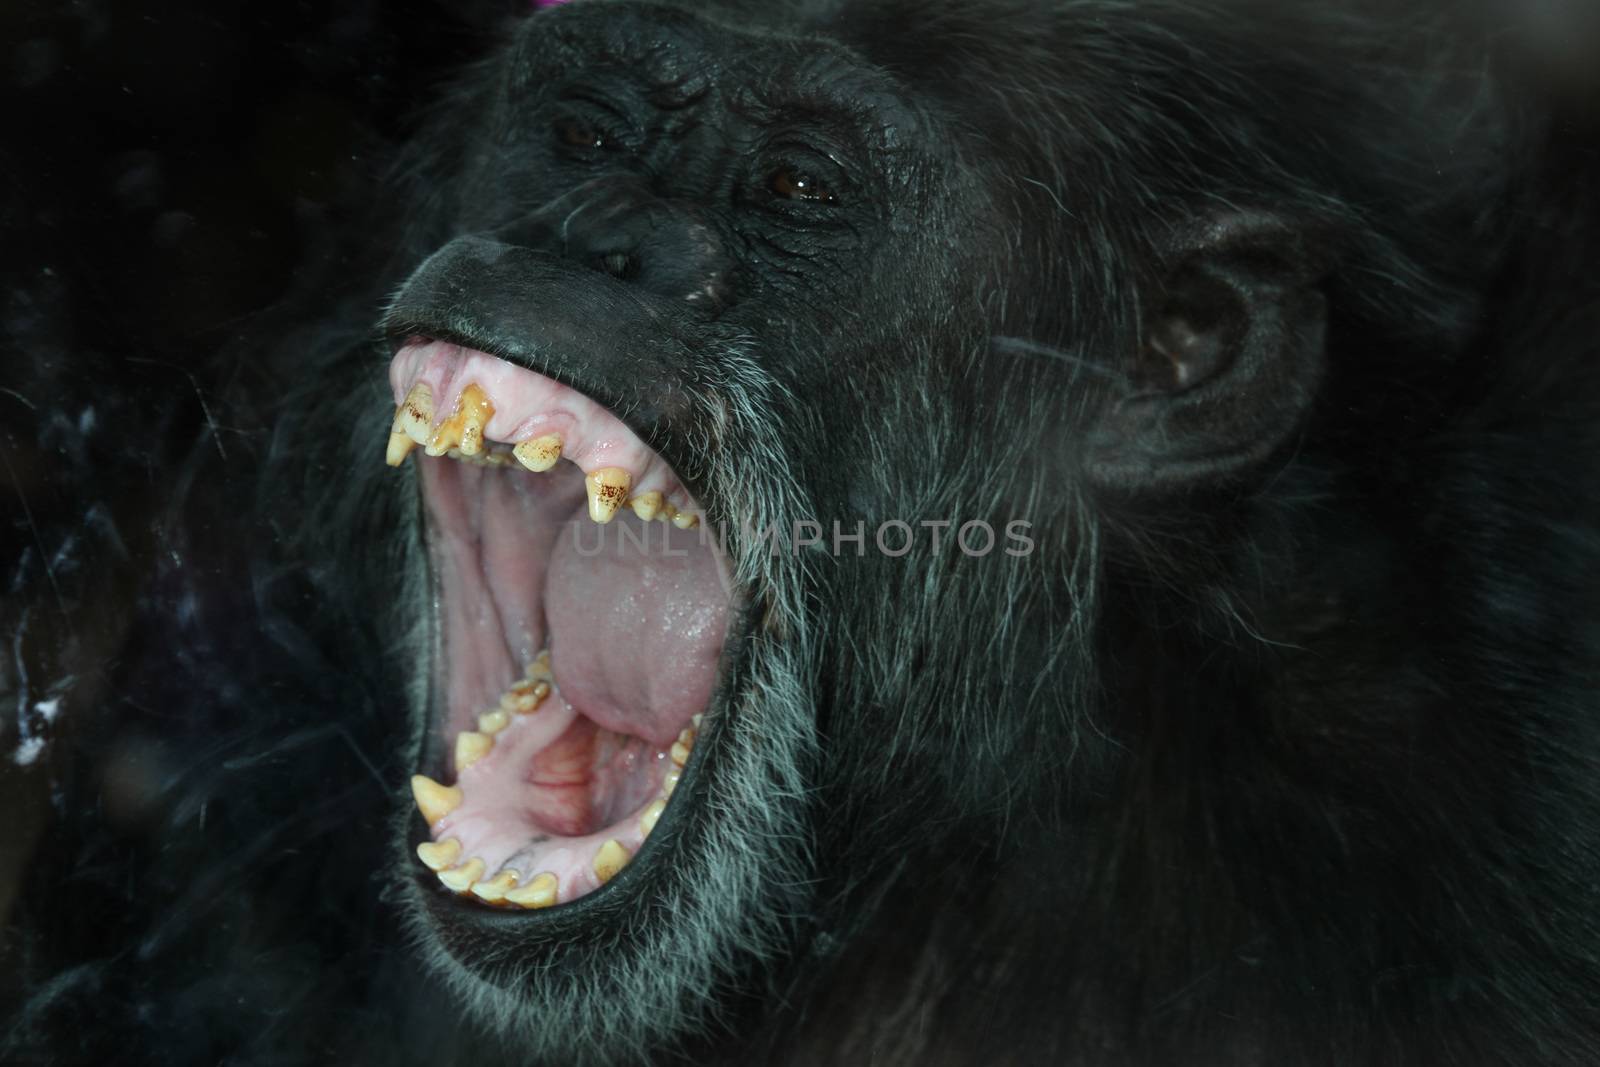 Chimp portrait by ozkanzozmen